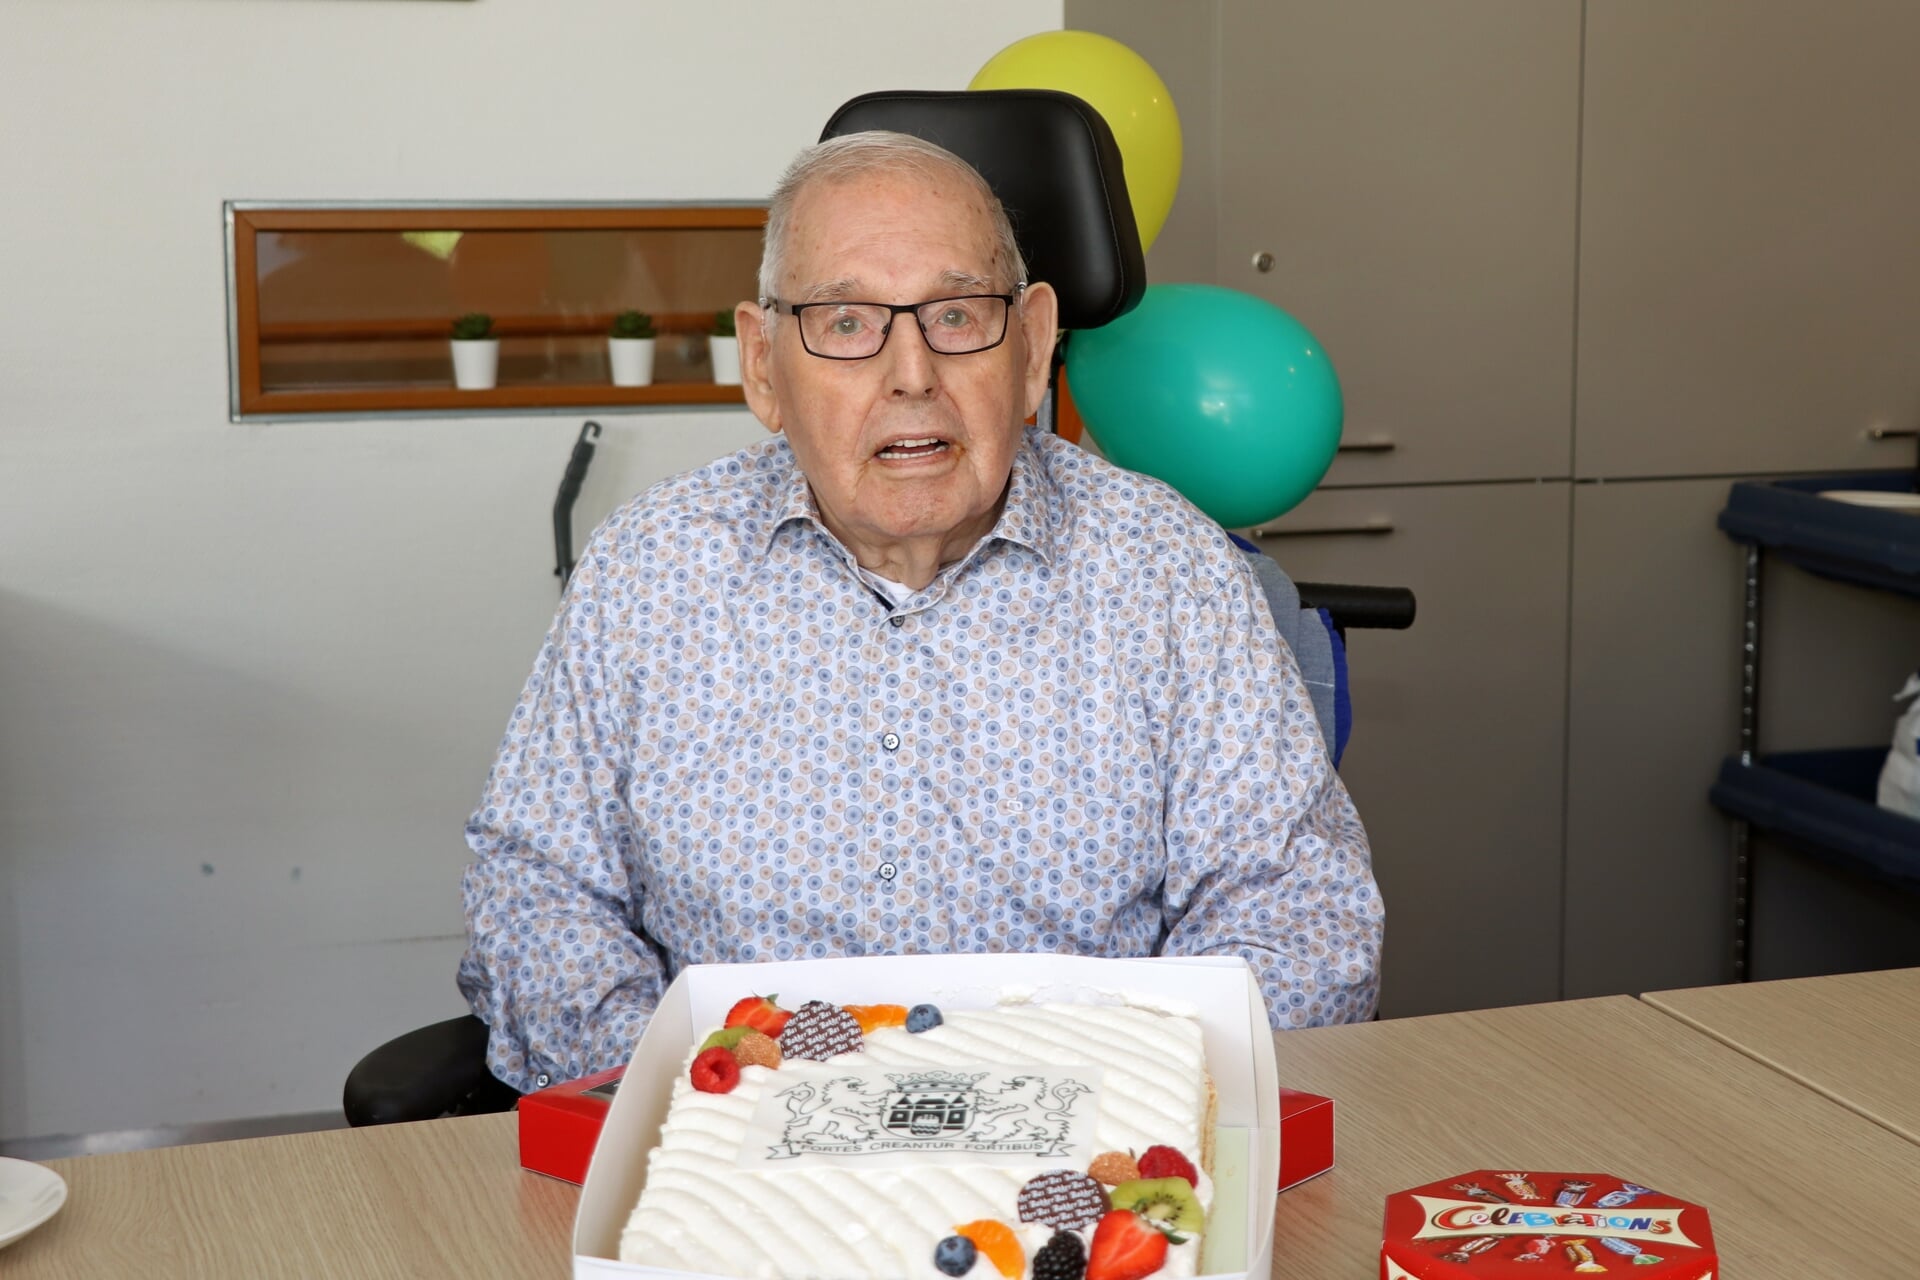 De gemeente trakteerde de 101-jarige Frans op taart